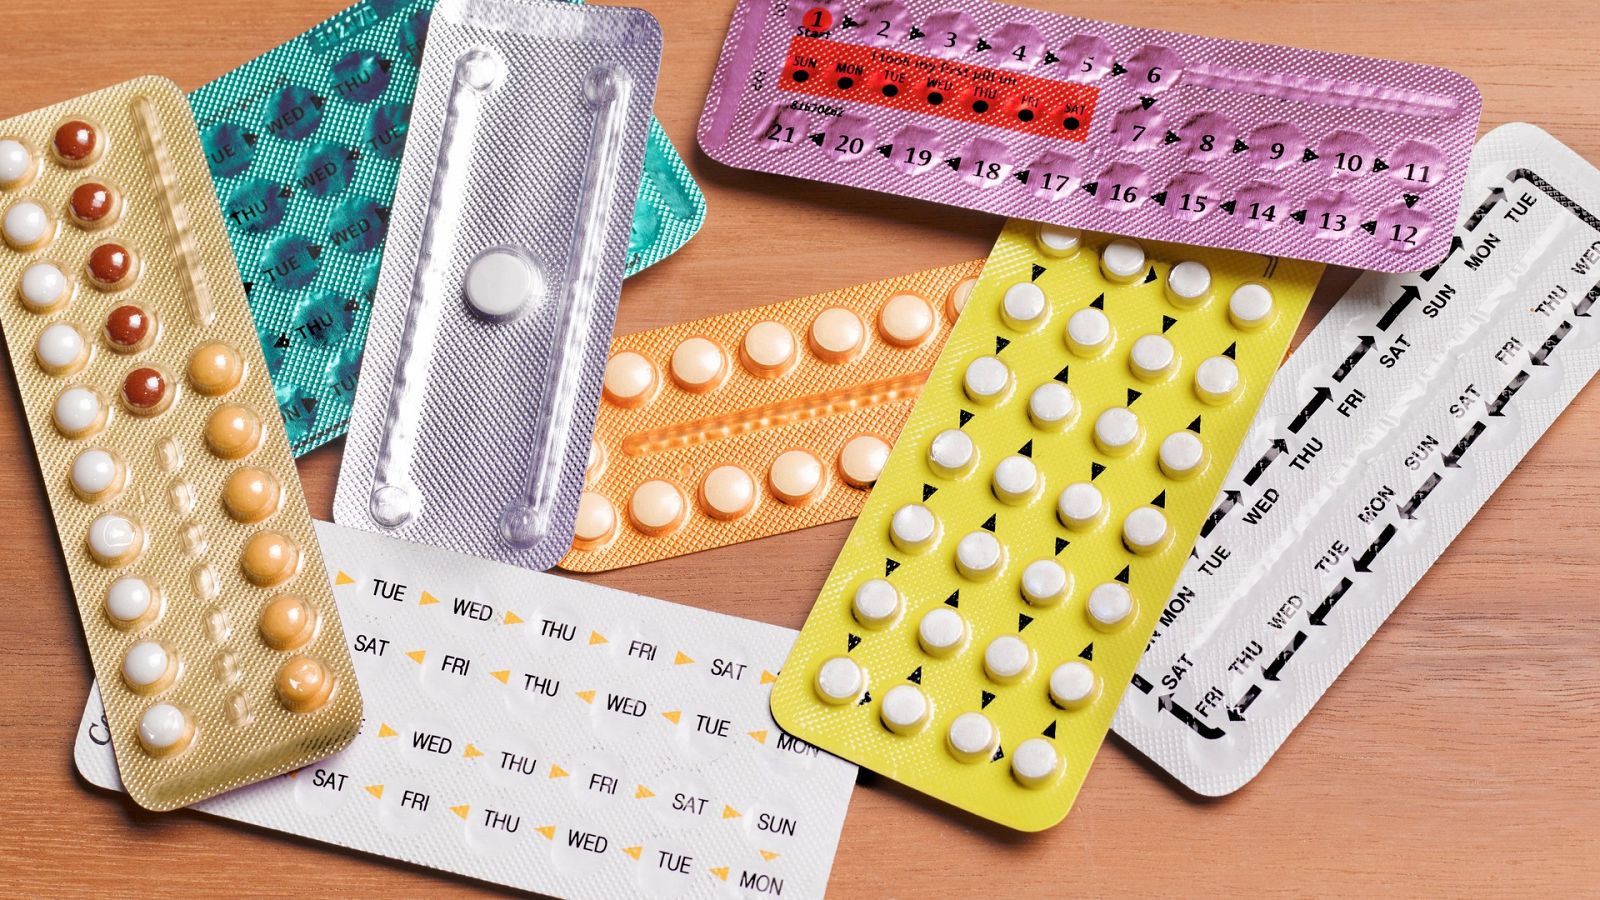 La píldora anticonceptiva para hombres "puede cambiar el paradigma y el concepto de anticoncepción"